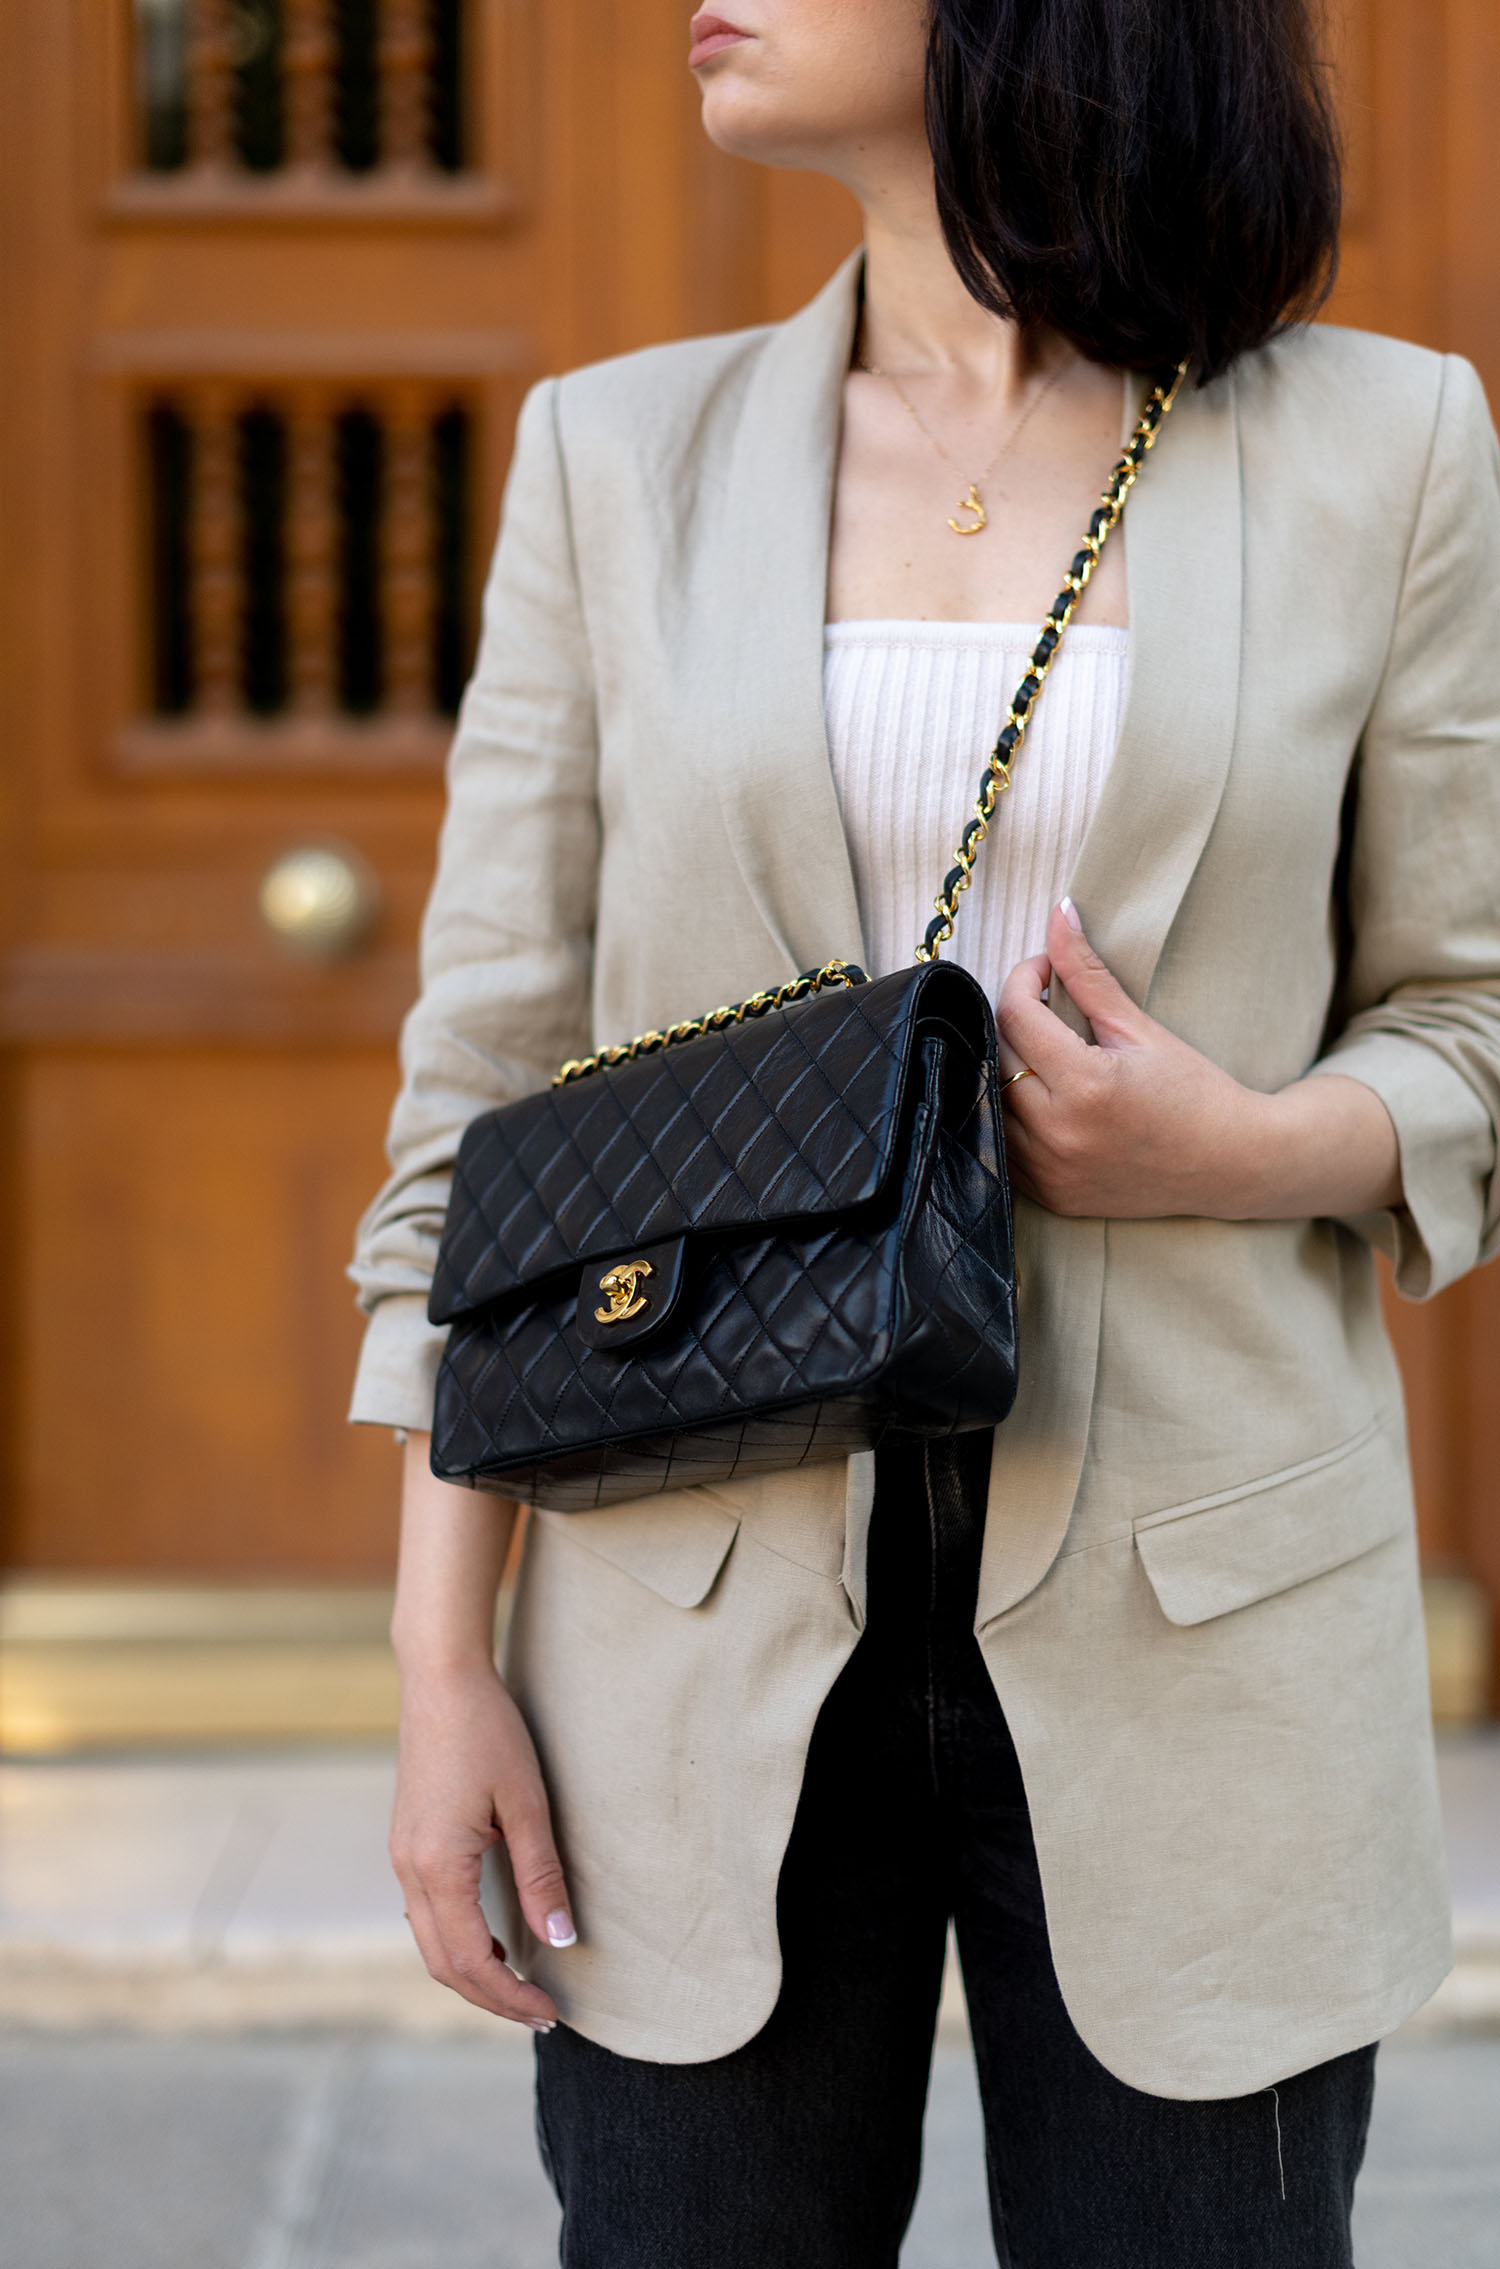 Coco & Voltaire - Chanel quilted handbag, Zara blazer, Almada Label top